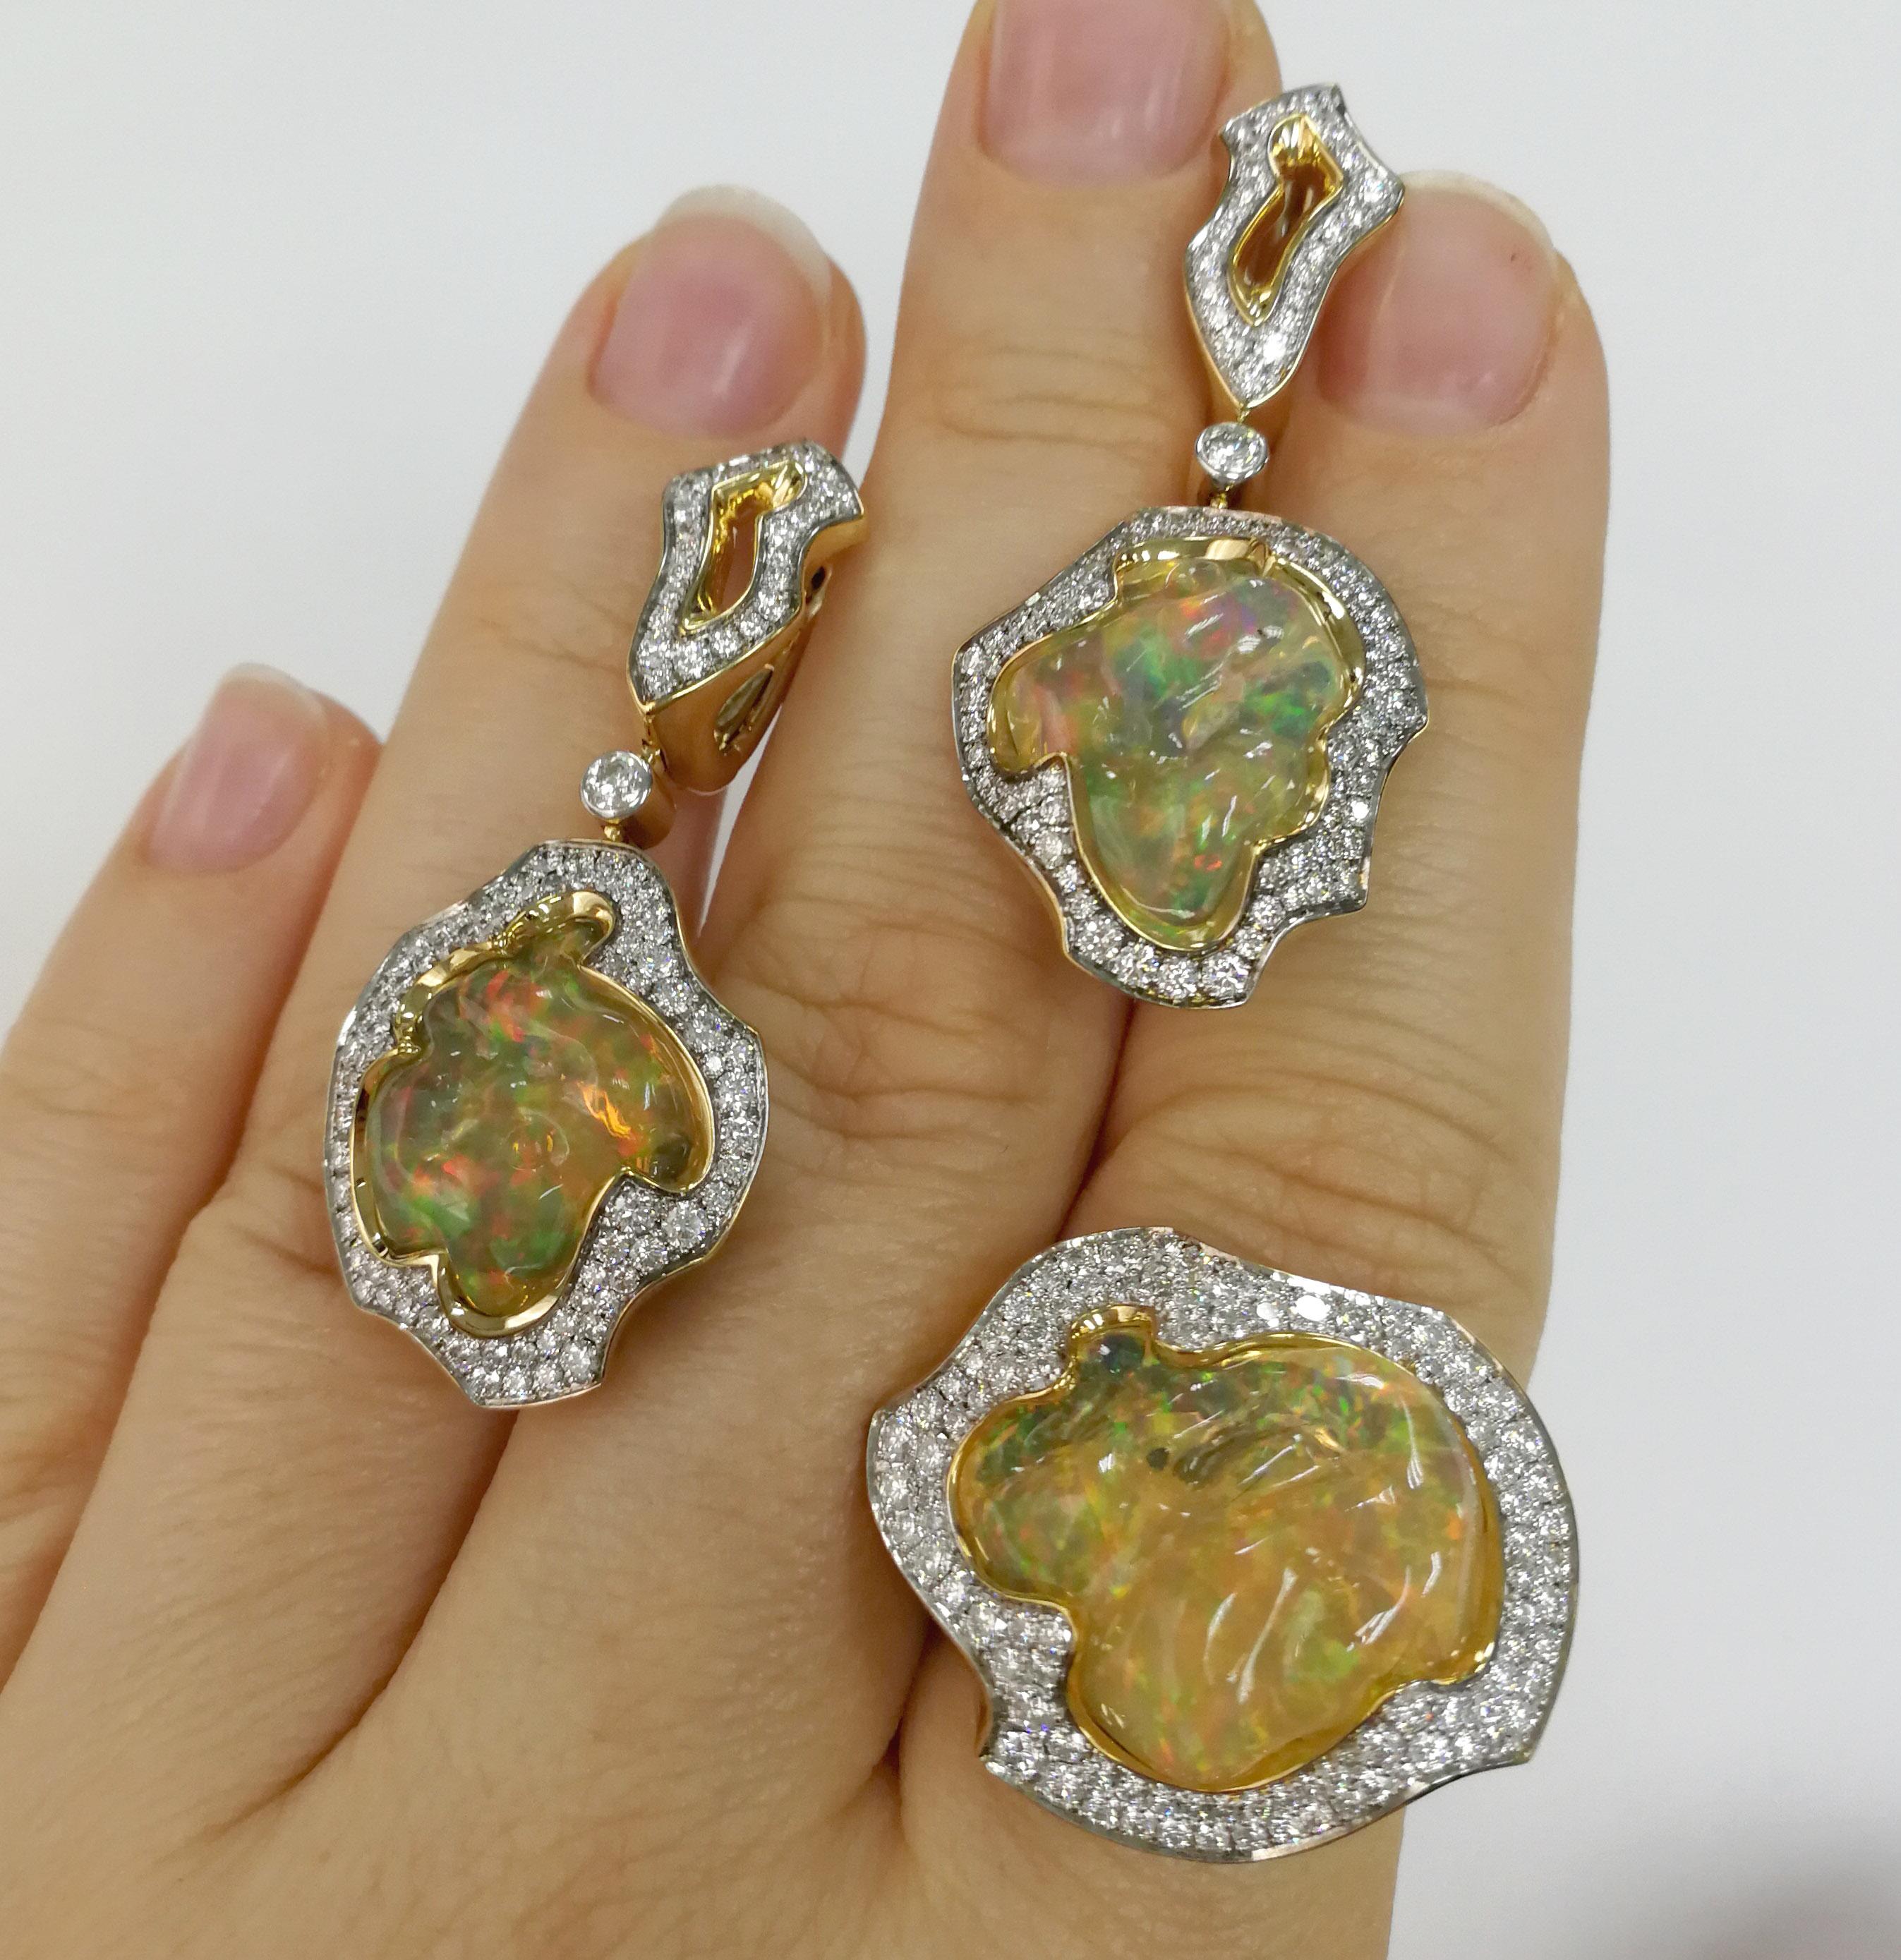 Mexikanischer Opal 25,07 Karat Diamanten Einzigartige Suite aus 18 Karat Gelbgold
Opale lassen sich im Gegensatz zu vielen anderen Steinen kaum schleifen, sie sind immer einzigartig. Schmuck mit Opalen ist daher immer Improvisation. So war es auch